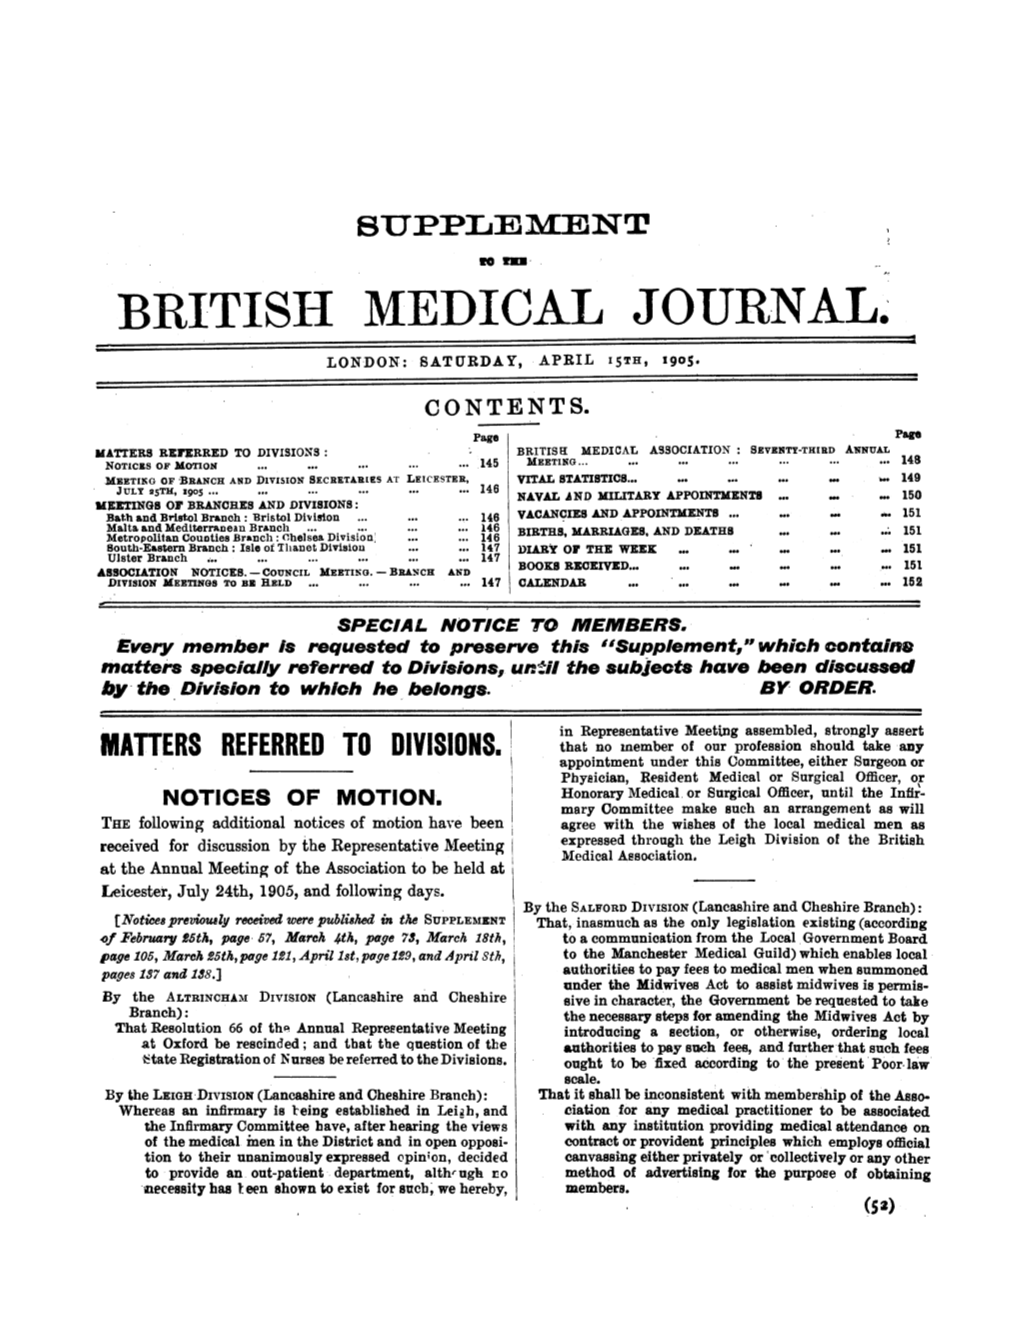 British Medical Journal. London: Saturday, April 15Th, 1905